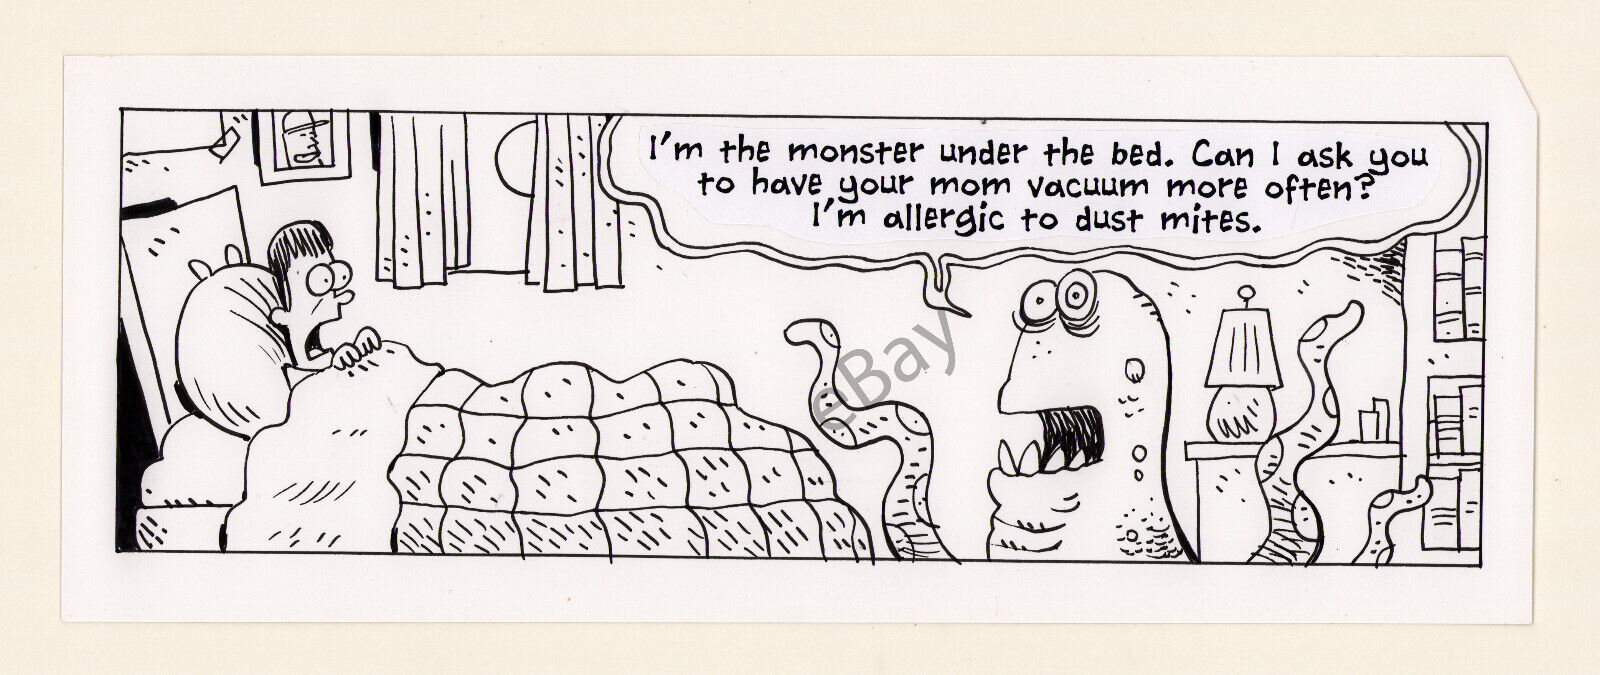 EEK Daily Comic Strip Original Art Monster Under the Bed Gag by Scott Nickel